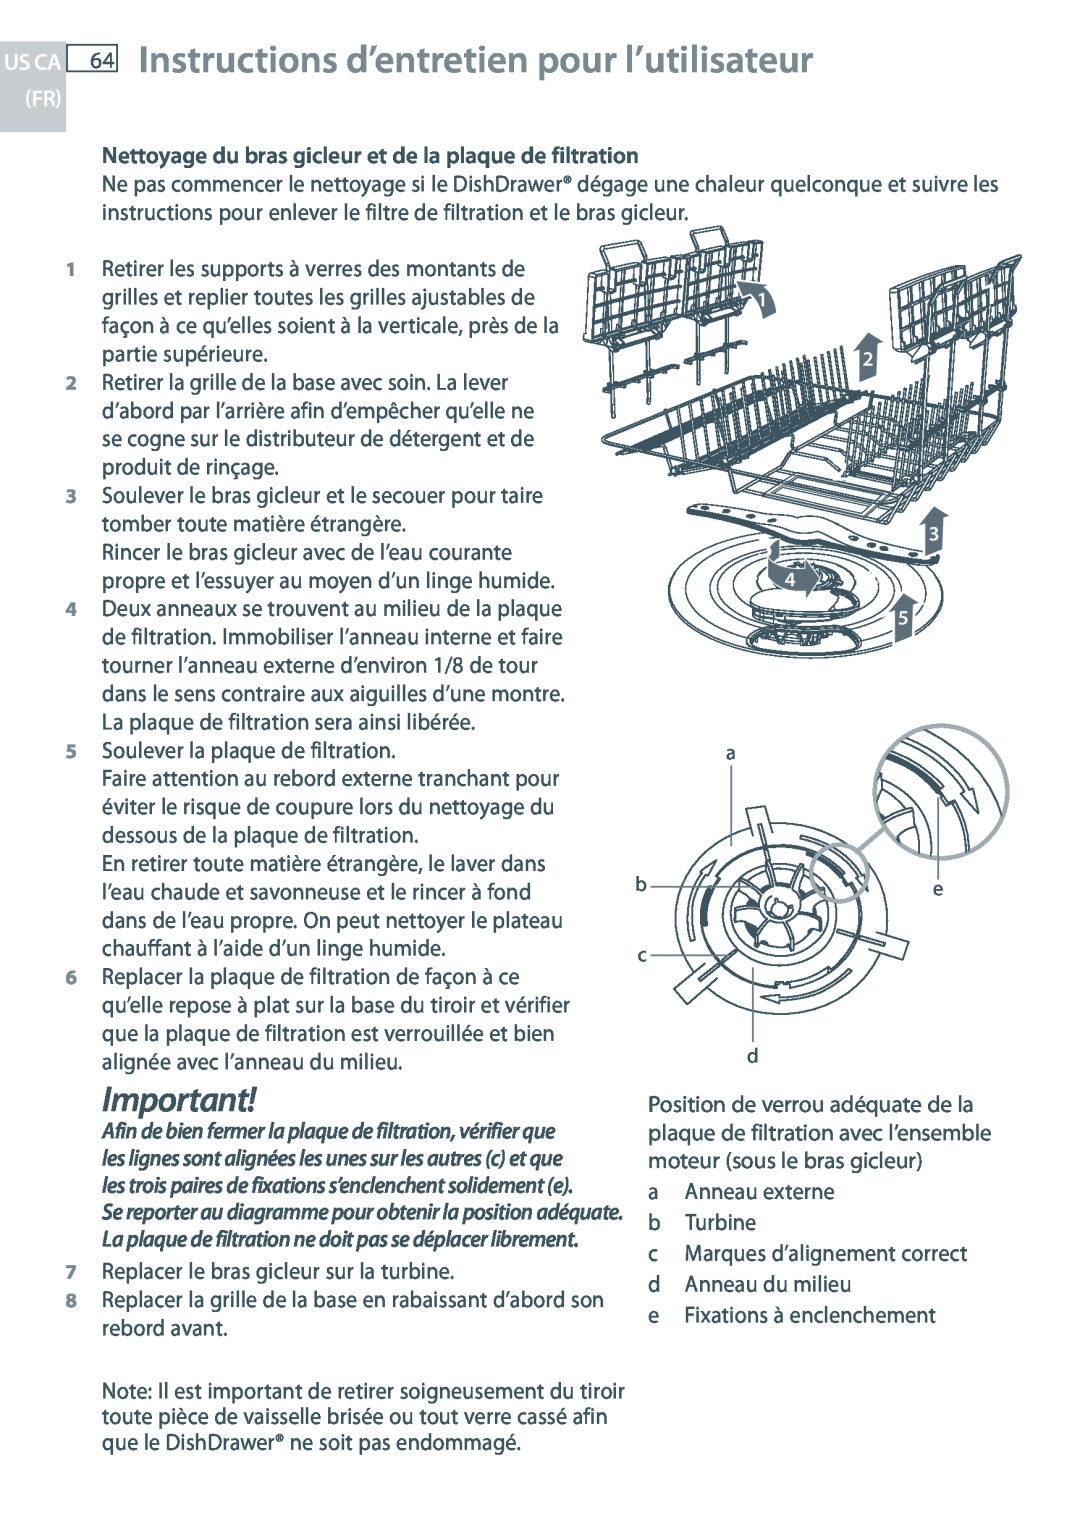 Fisher & Paykel DD24 manual Instructions d’entretien pour l’utilisateur, Us Ca Fr, Soulever la plaque de filtration 